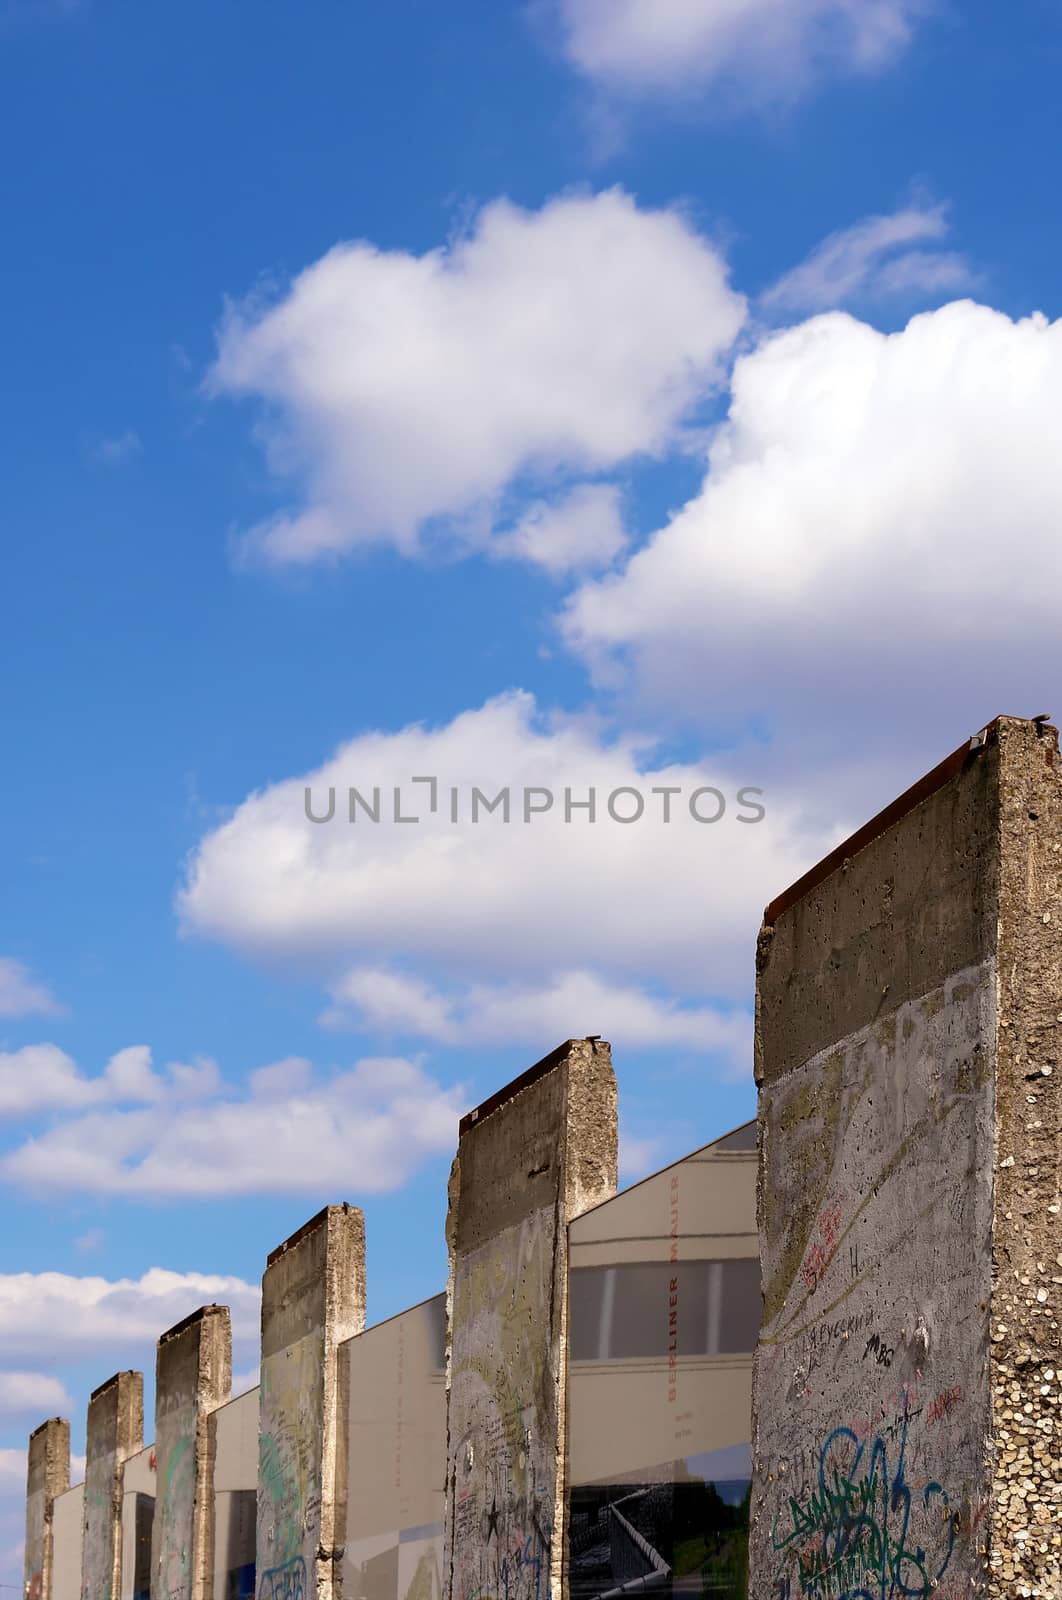 Parts of the berlin wall in potsdamer platz, Berlin, Germany